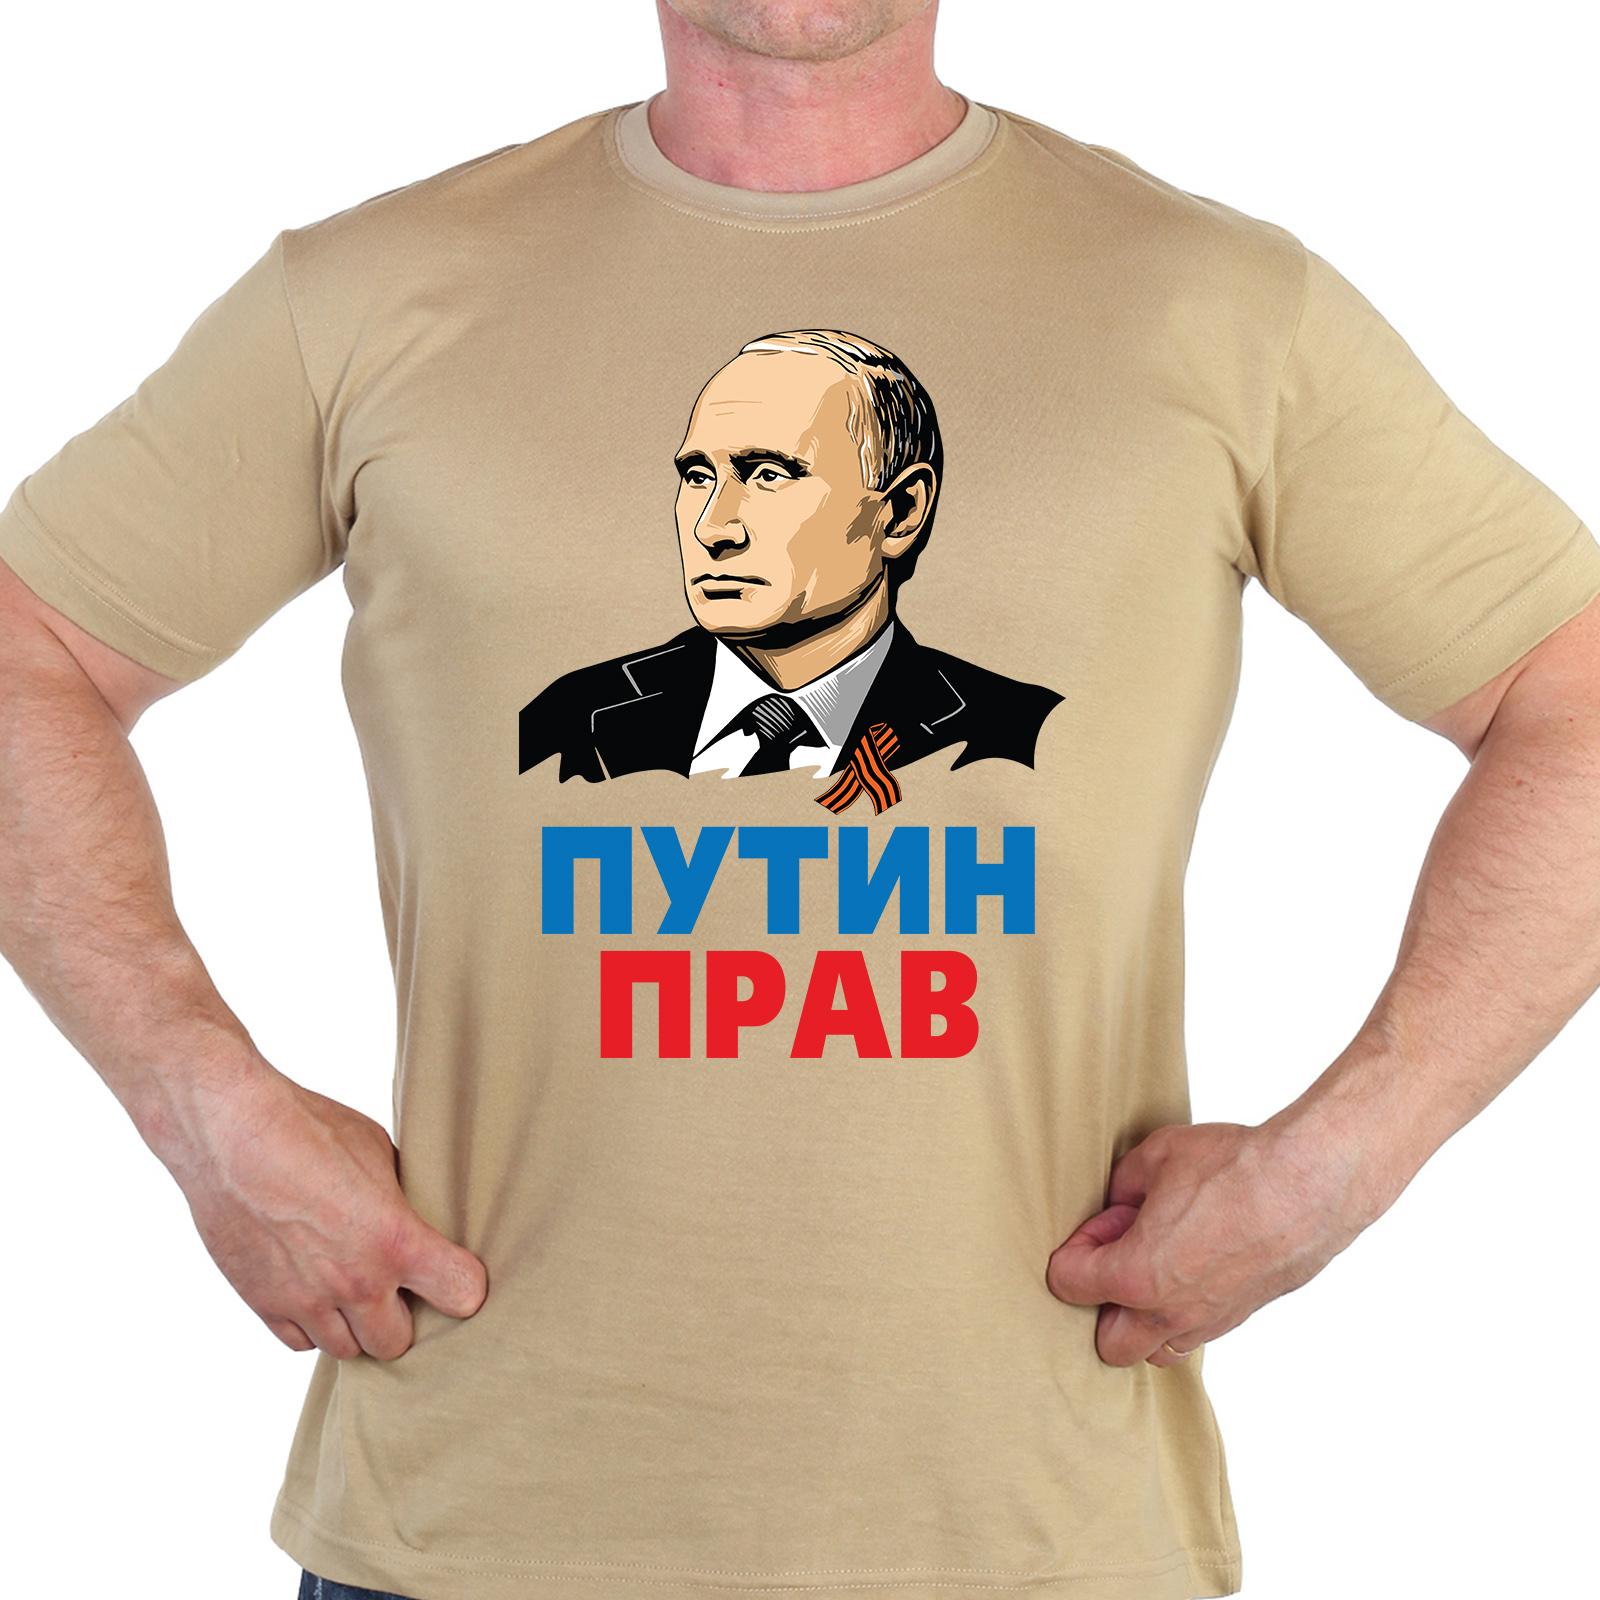 Купить футболку хаки-песок с принтом "Путин прав"